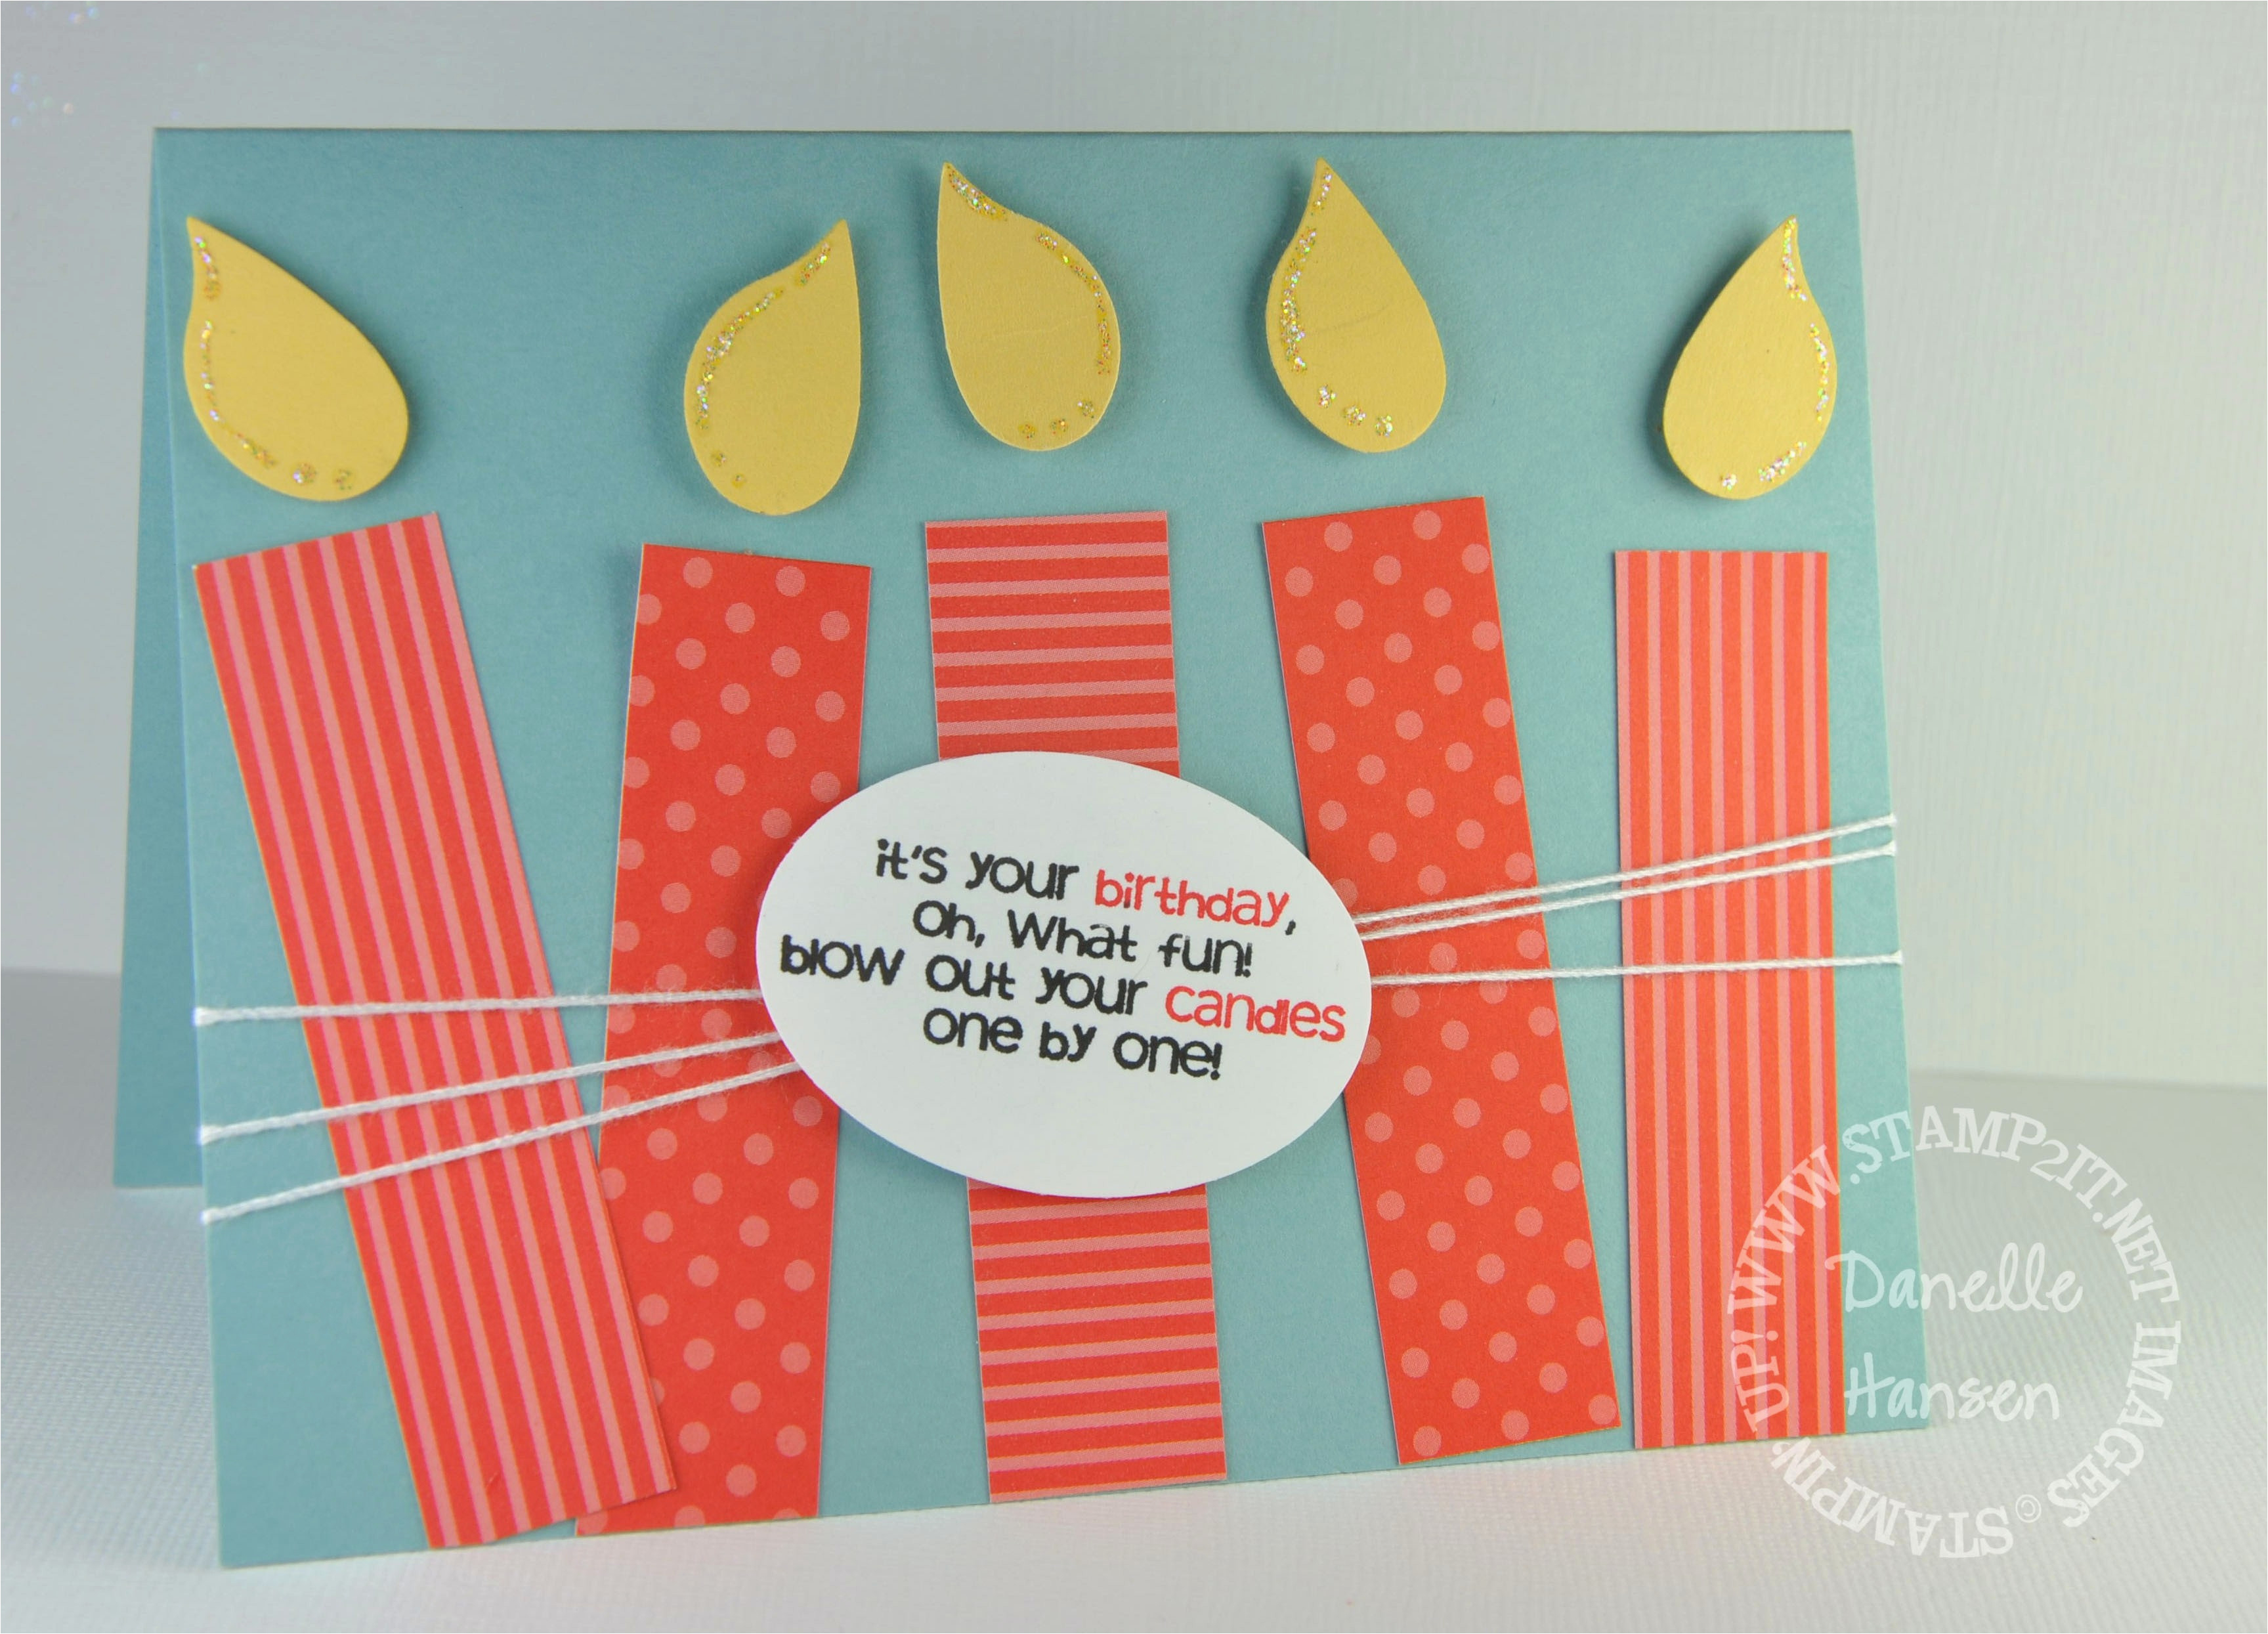 Birthday Cards Ideas For Him Diy Birthday Cards For Husband Creative Handmade Birthday Card Ideas